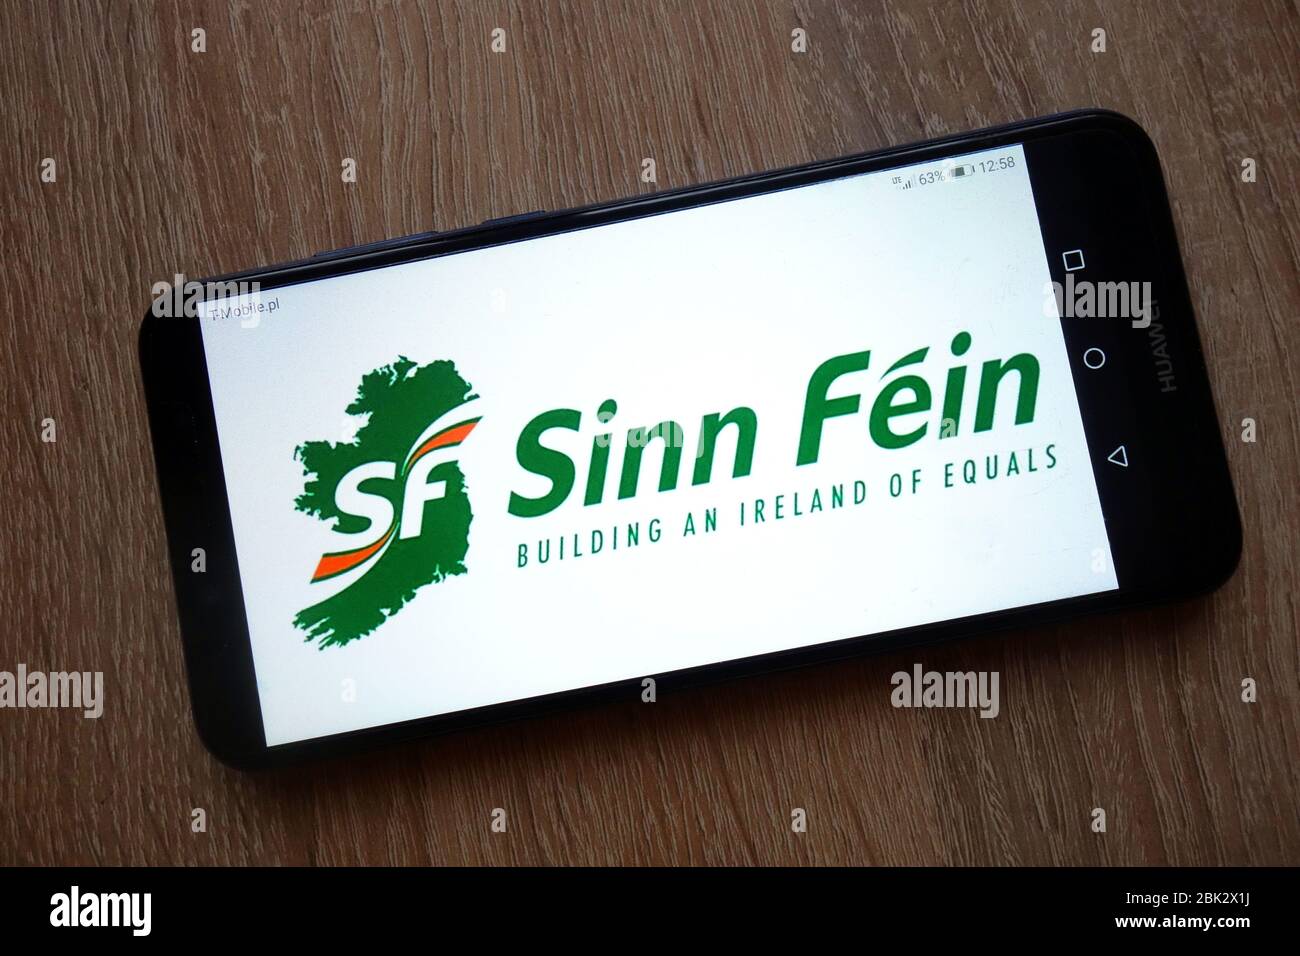 Sinn Fein Irish republican politique logo affiché sur smartphone Banque D'Images